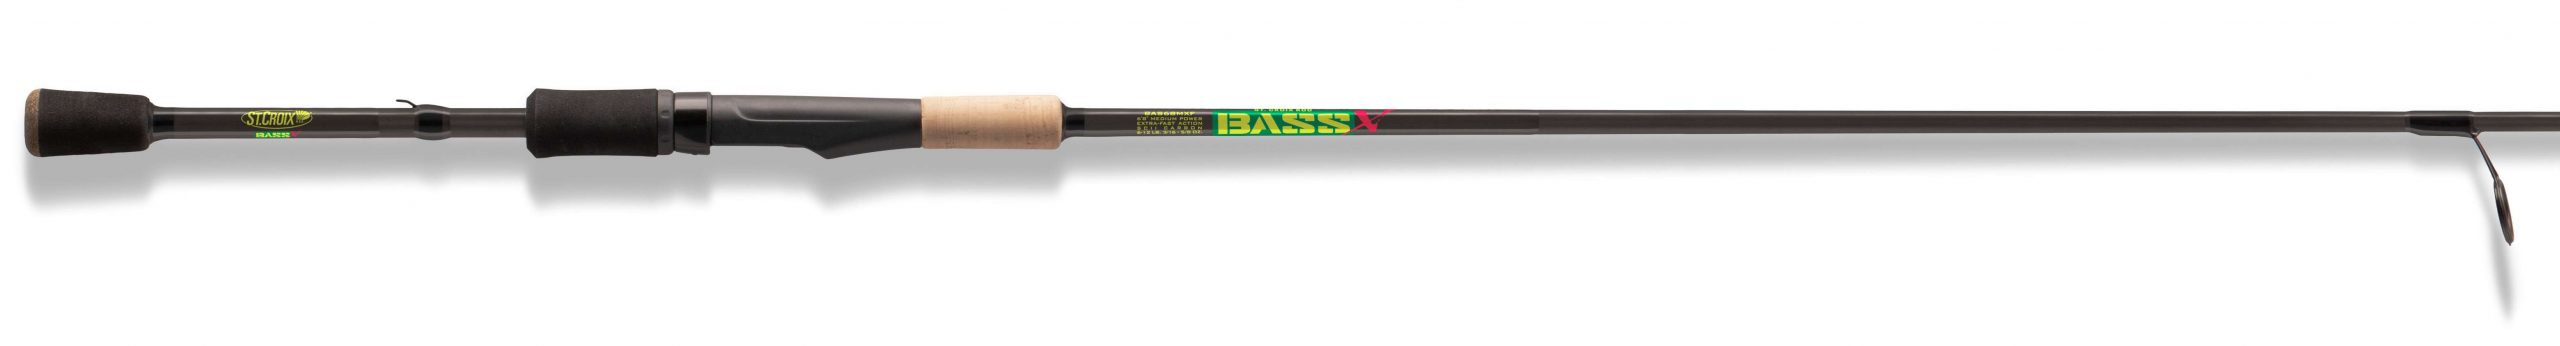 Gear Review: St. Croix Bass X Rods - Bassmaster